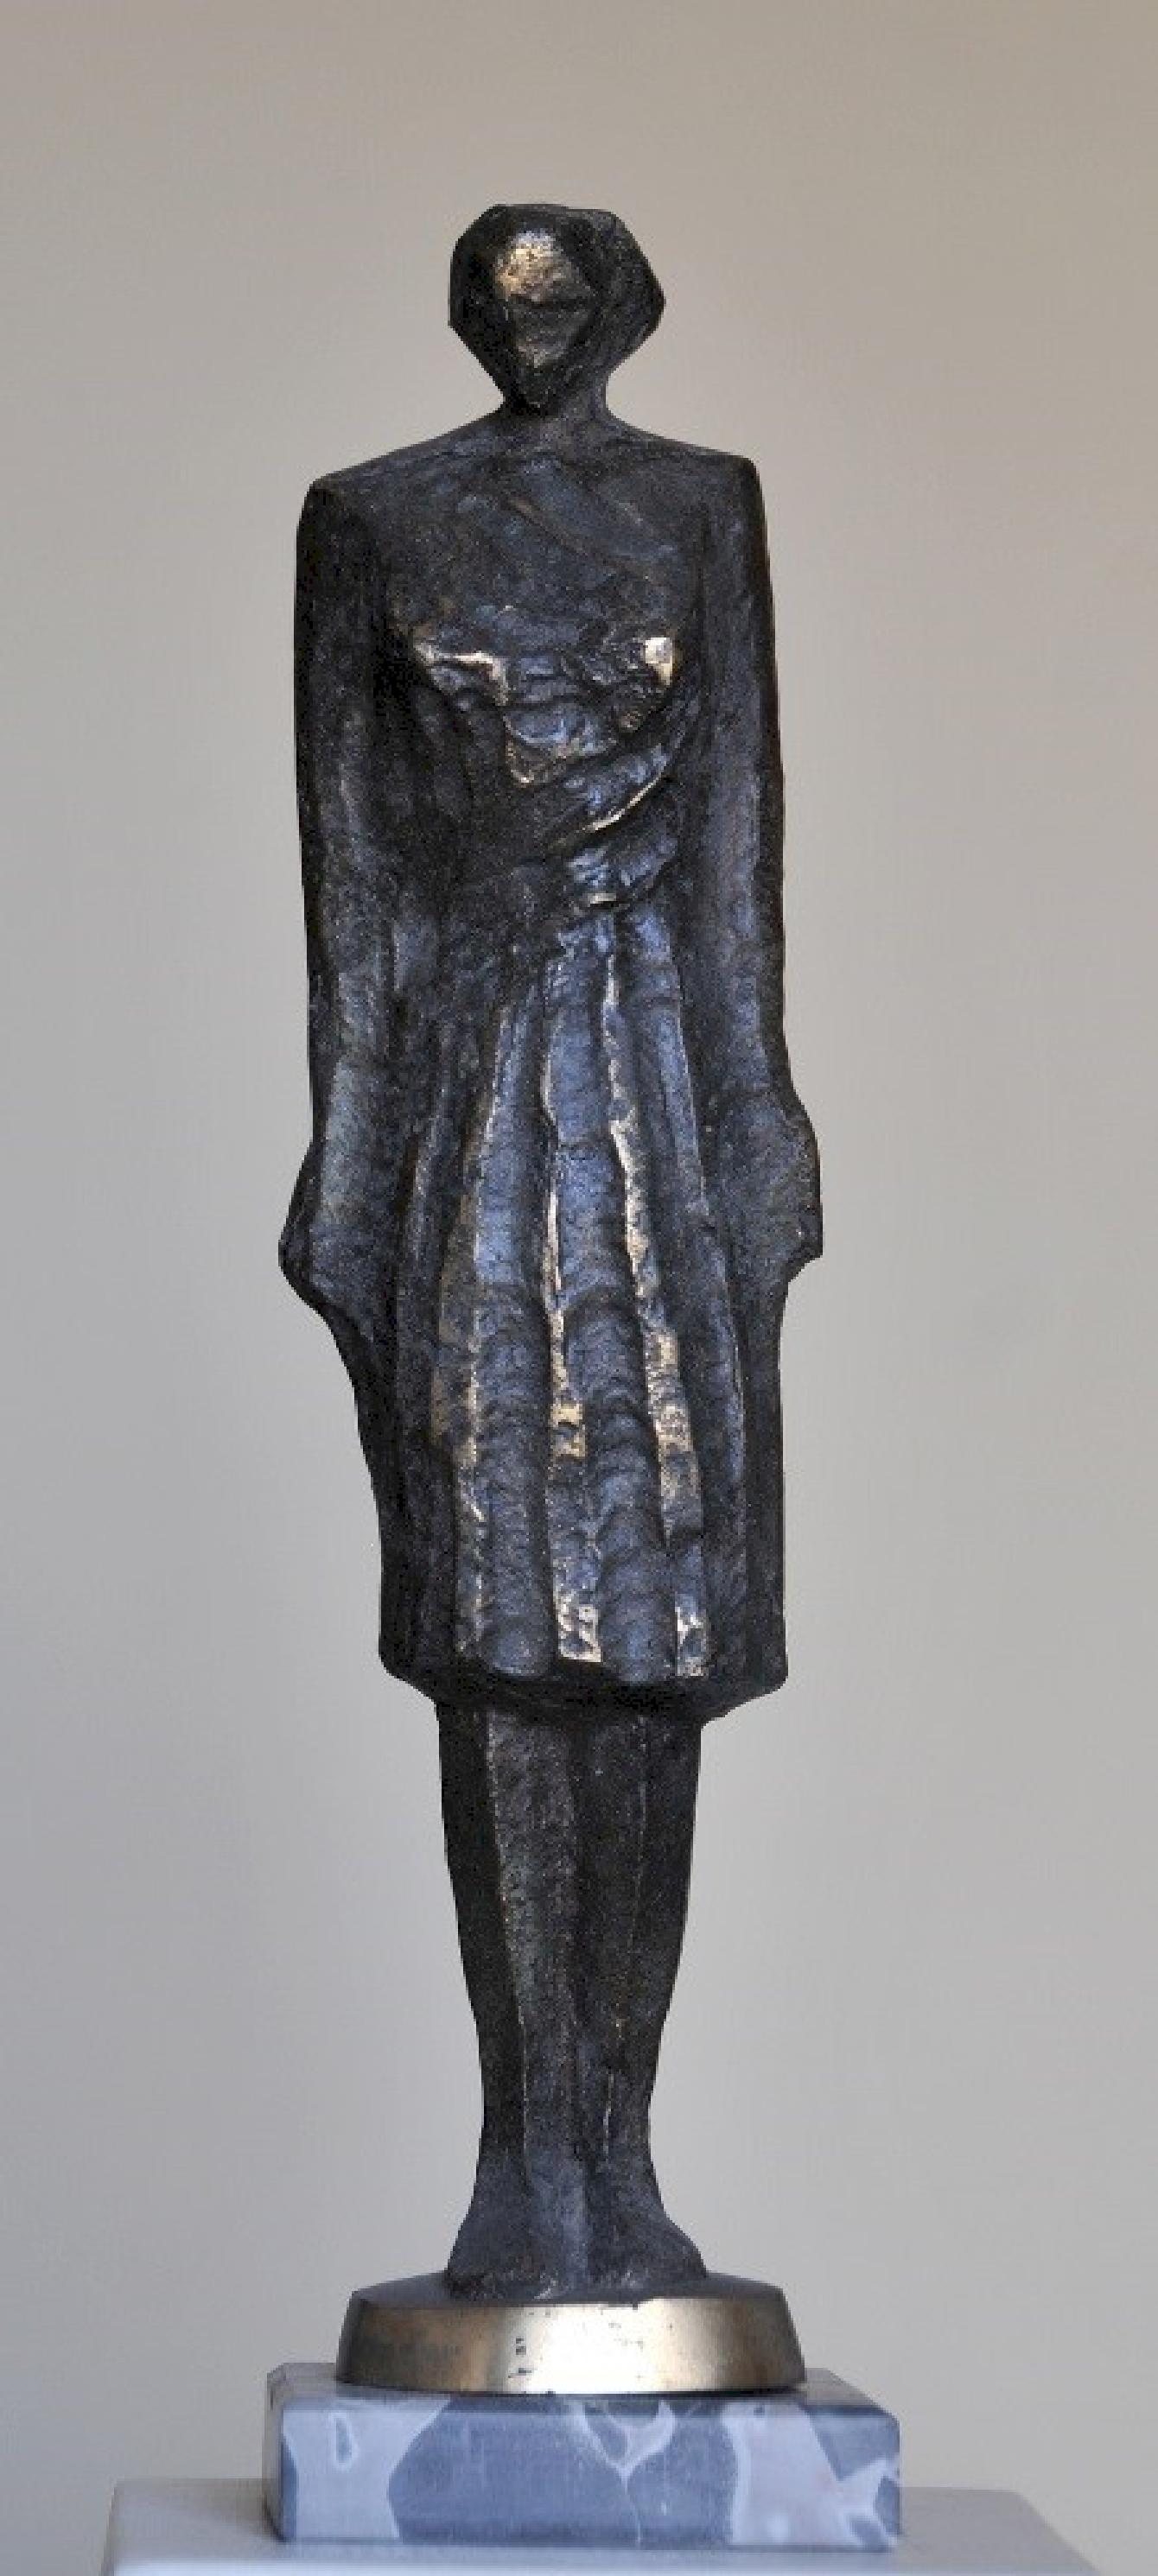 Sculpture en bronze « Soldier » de 20" x 5" x 3,5" pouces par Sarkis Tossonian

Sarkis Tossoonian est né à Alexandrie en 1953. Il est diplômé de la Faculté des Beaux-Arts/Sculpture en 1979. Il a commencé à exposer dans des expositions individuelles